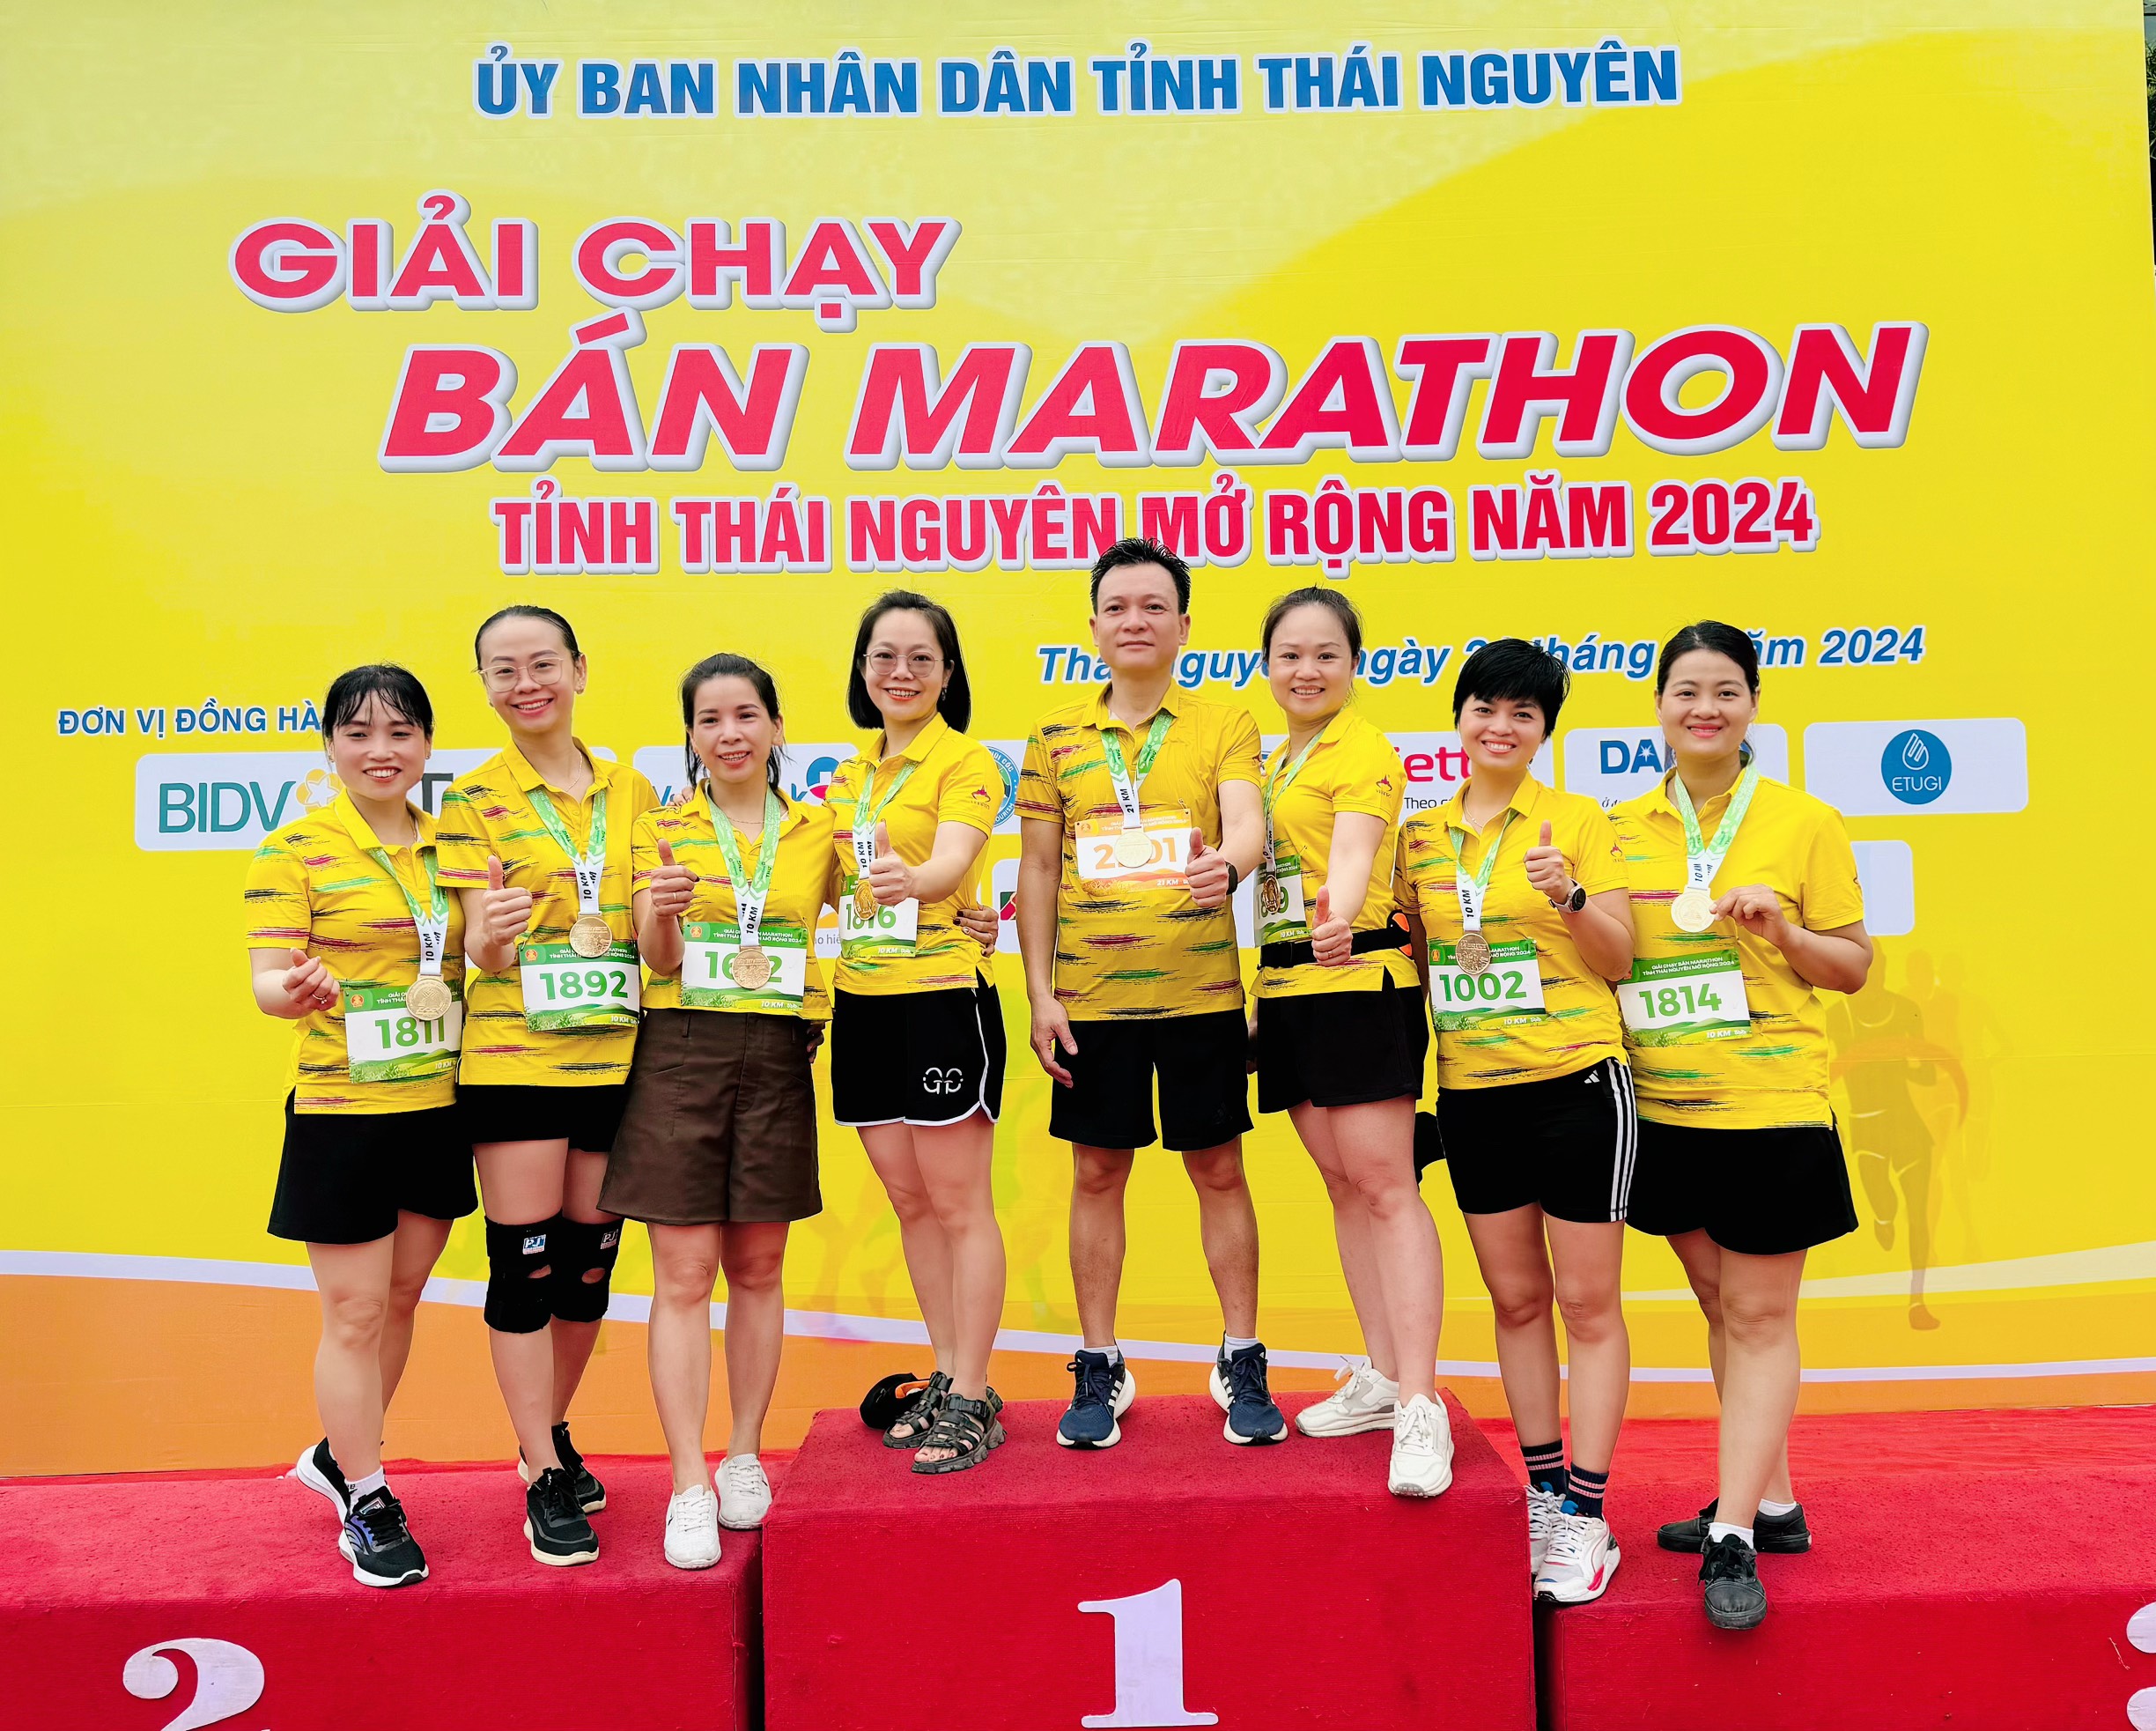 Trung tâm thí nghiệm Điện tham gia Giải chạy bán Marathon tỉnh Thái Nguyên năm 2024